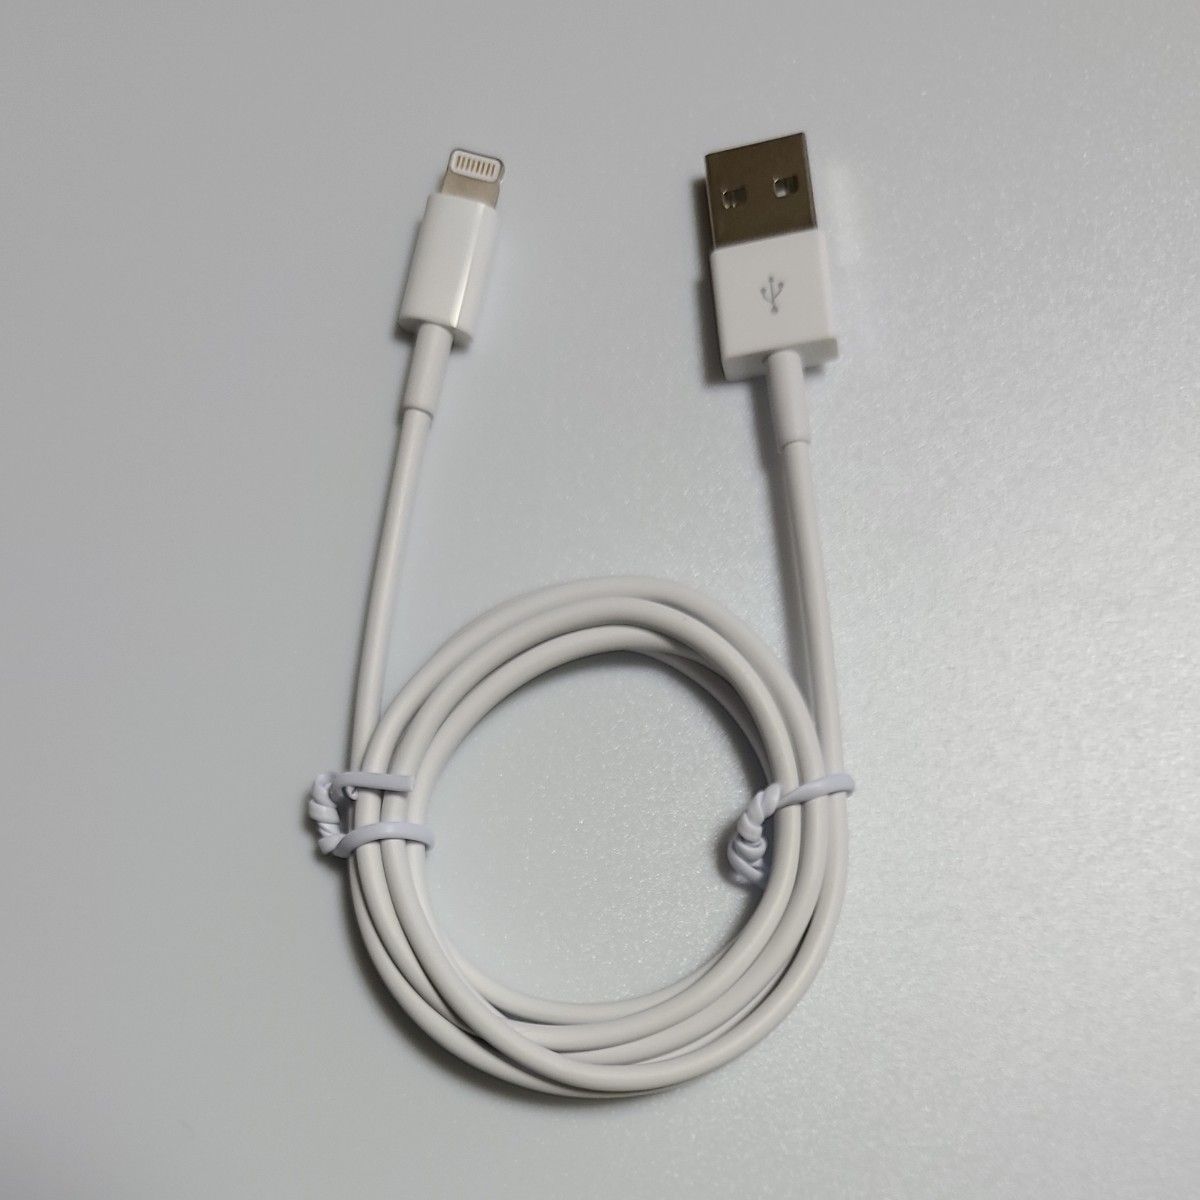 Apple純正5W電源アダプタ＋MFi認証80cmLightningケーブル